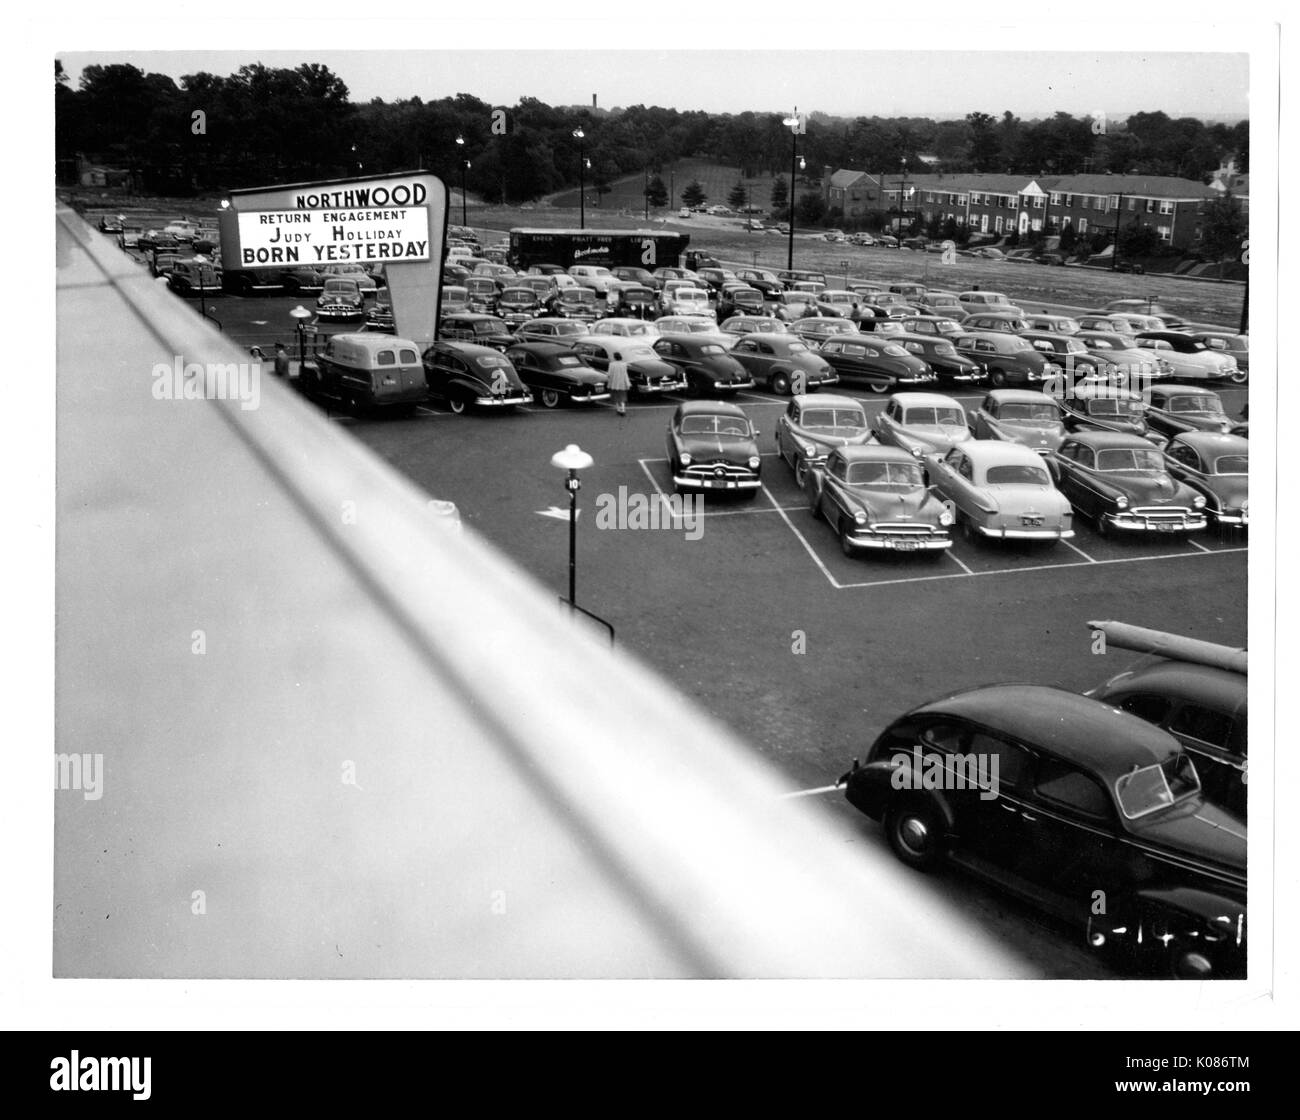 Photographie prise au-dessus du terrain de stationnement du centre commercial Northwood à Baltimore, rempli de voitures, par un illuminé panneau 'Northwood, ' avec de nombreux arbres int il fond, chaque voiture garée parfaitement dans les lignes blanches qui délimitent chaque espace, Baltimore, Maryland, le 14 juin 1951. Banque D'Images